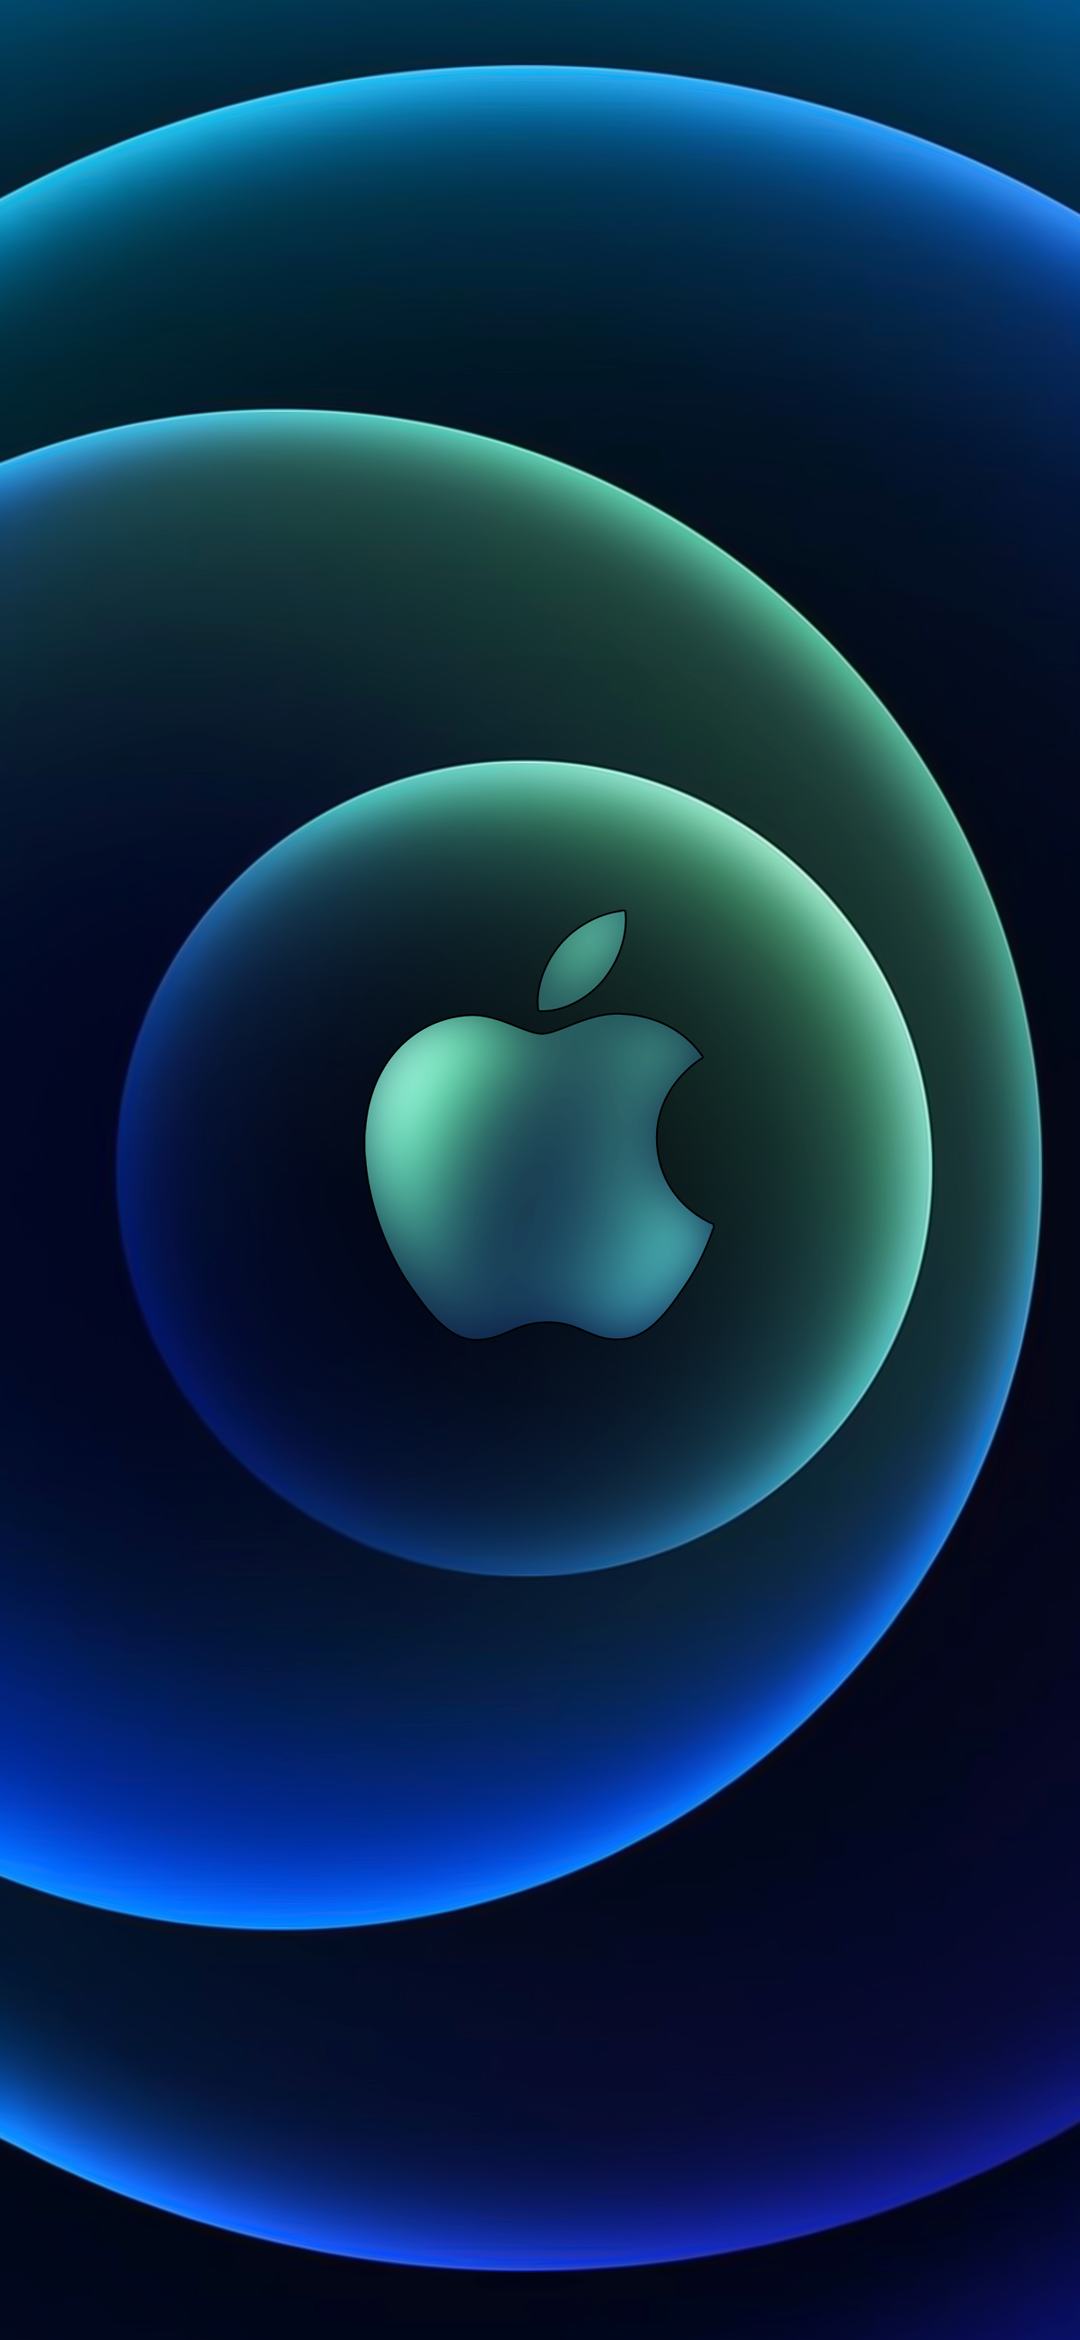 Blue Apple Logo wallpaper by ItsMeGoldenEye  Download on ZEDGE  1e62